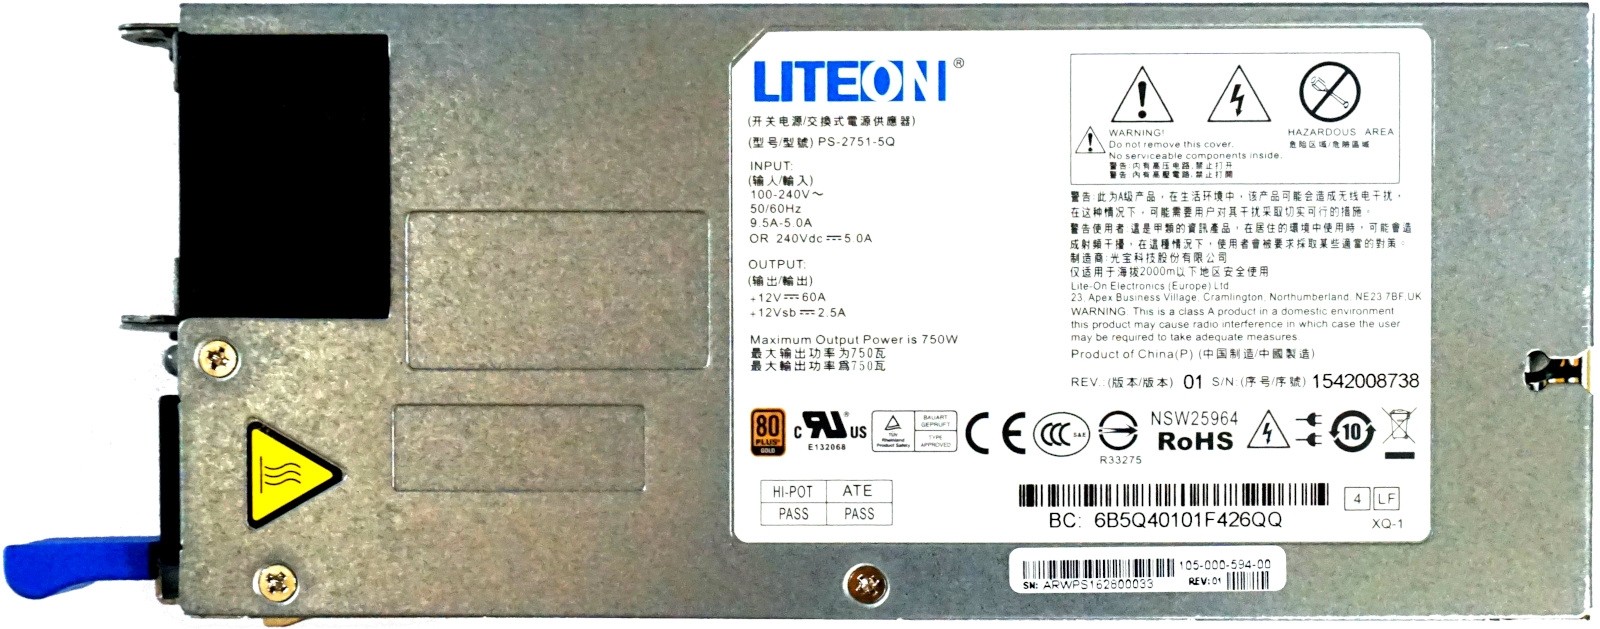 LiteOn 750W Dell C2100, Quanta D51B Hot-Swap PSU